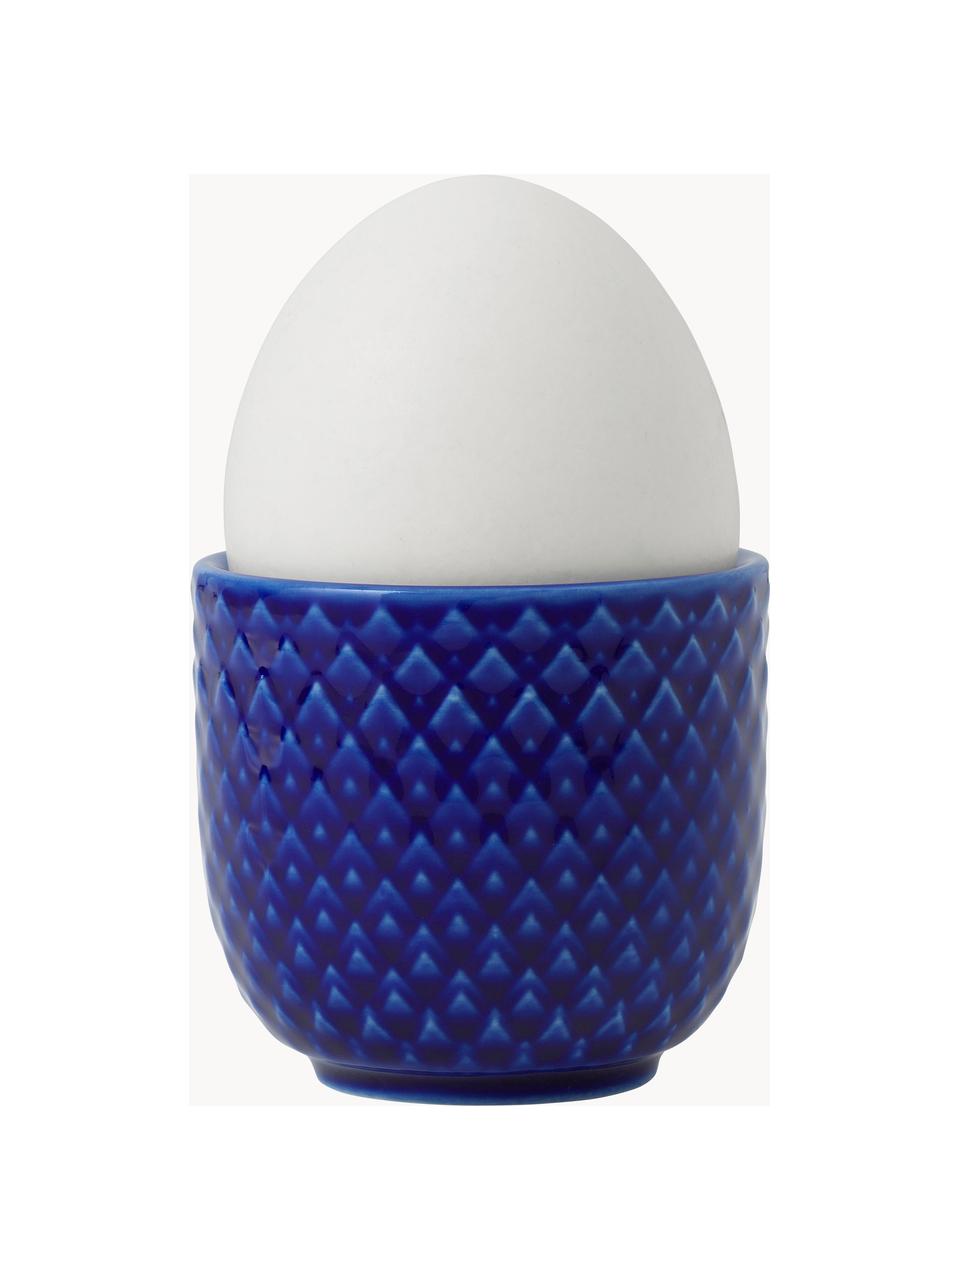 Porcelánové stojany na vajíčka se strukturovaným vzorem Rhombe, 4 ks, Porcelán, Tmavě modrá, Š 5 cm, V 5 cm